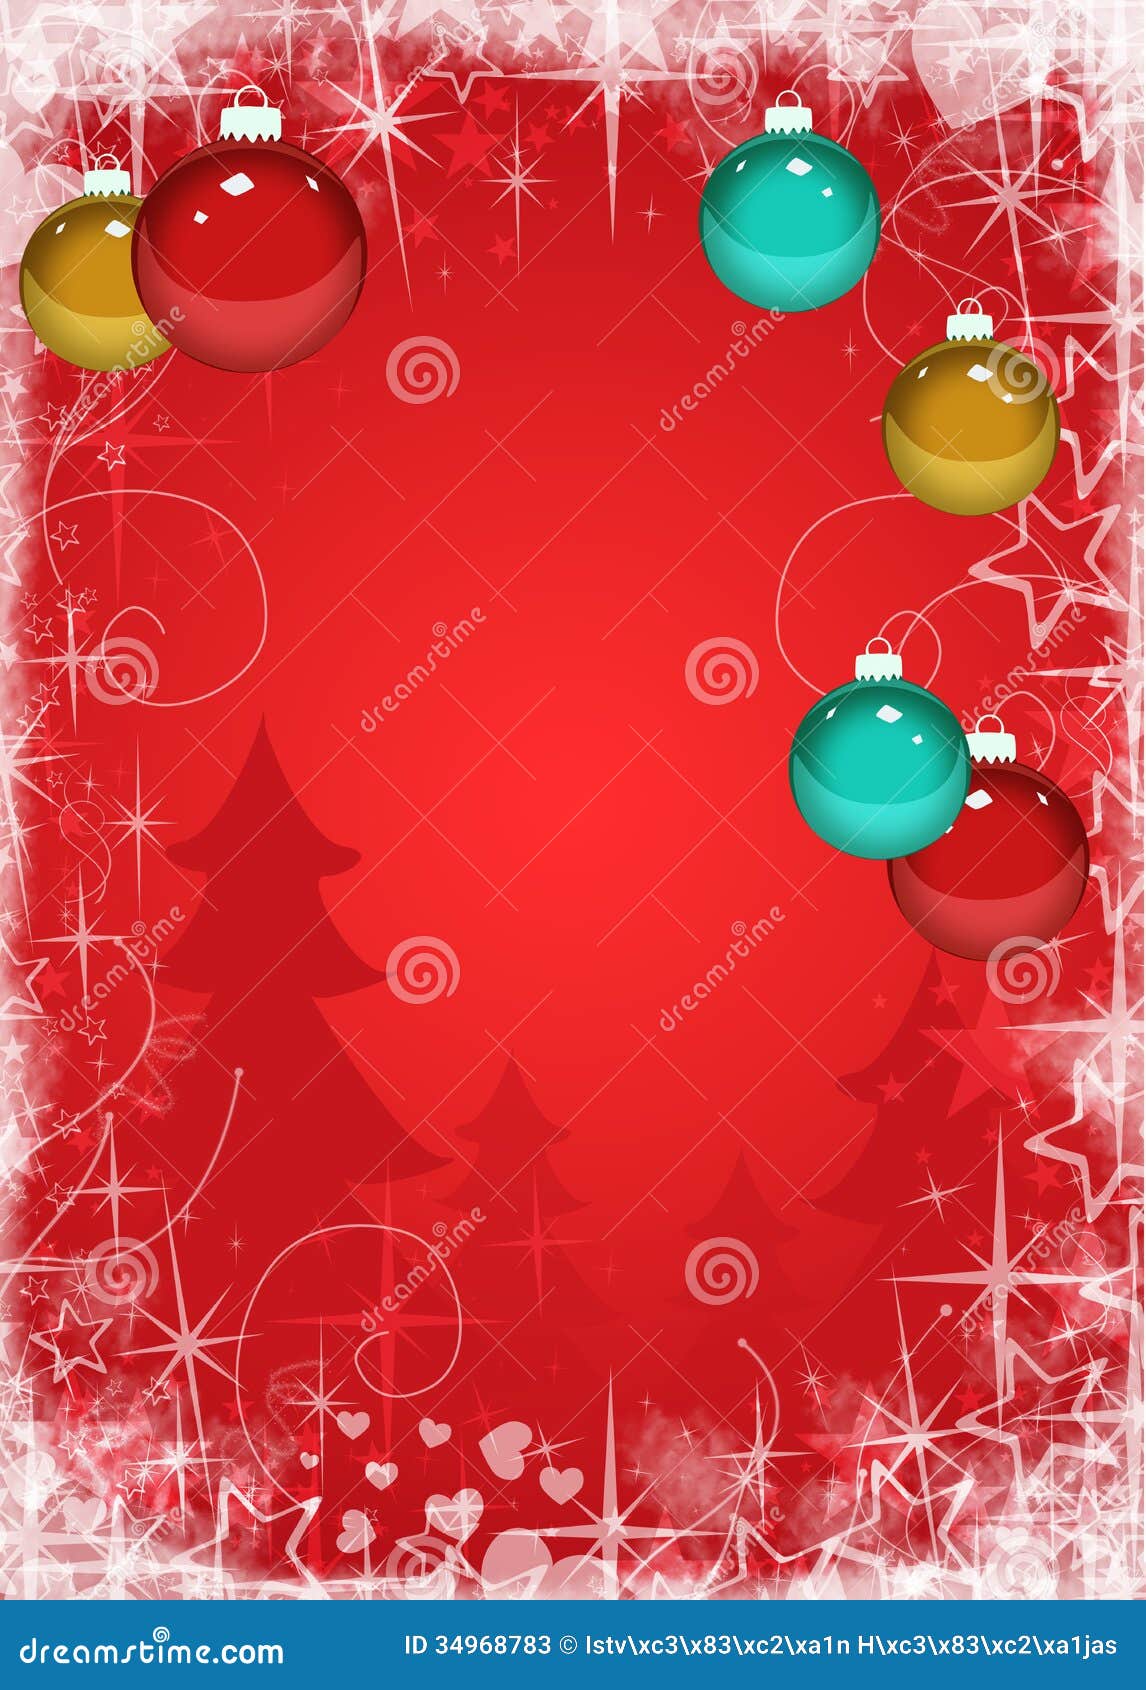 Christmas Decoration Background Stock Photos - Image: 34968783